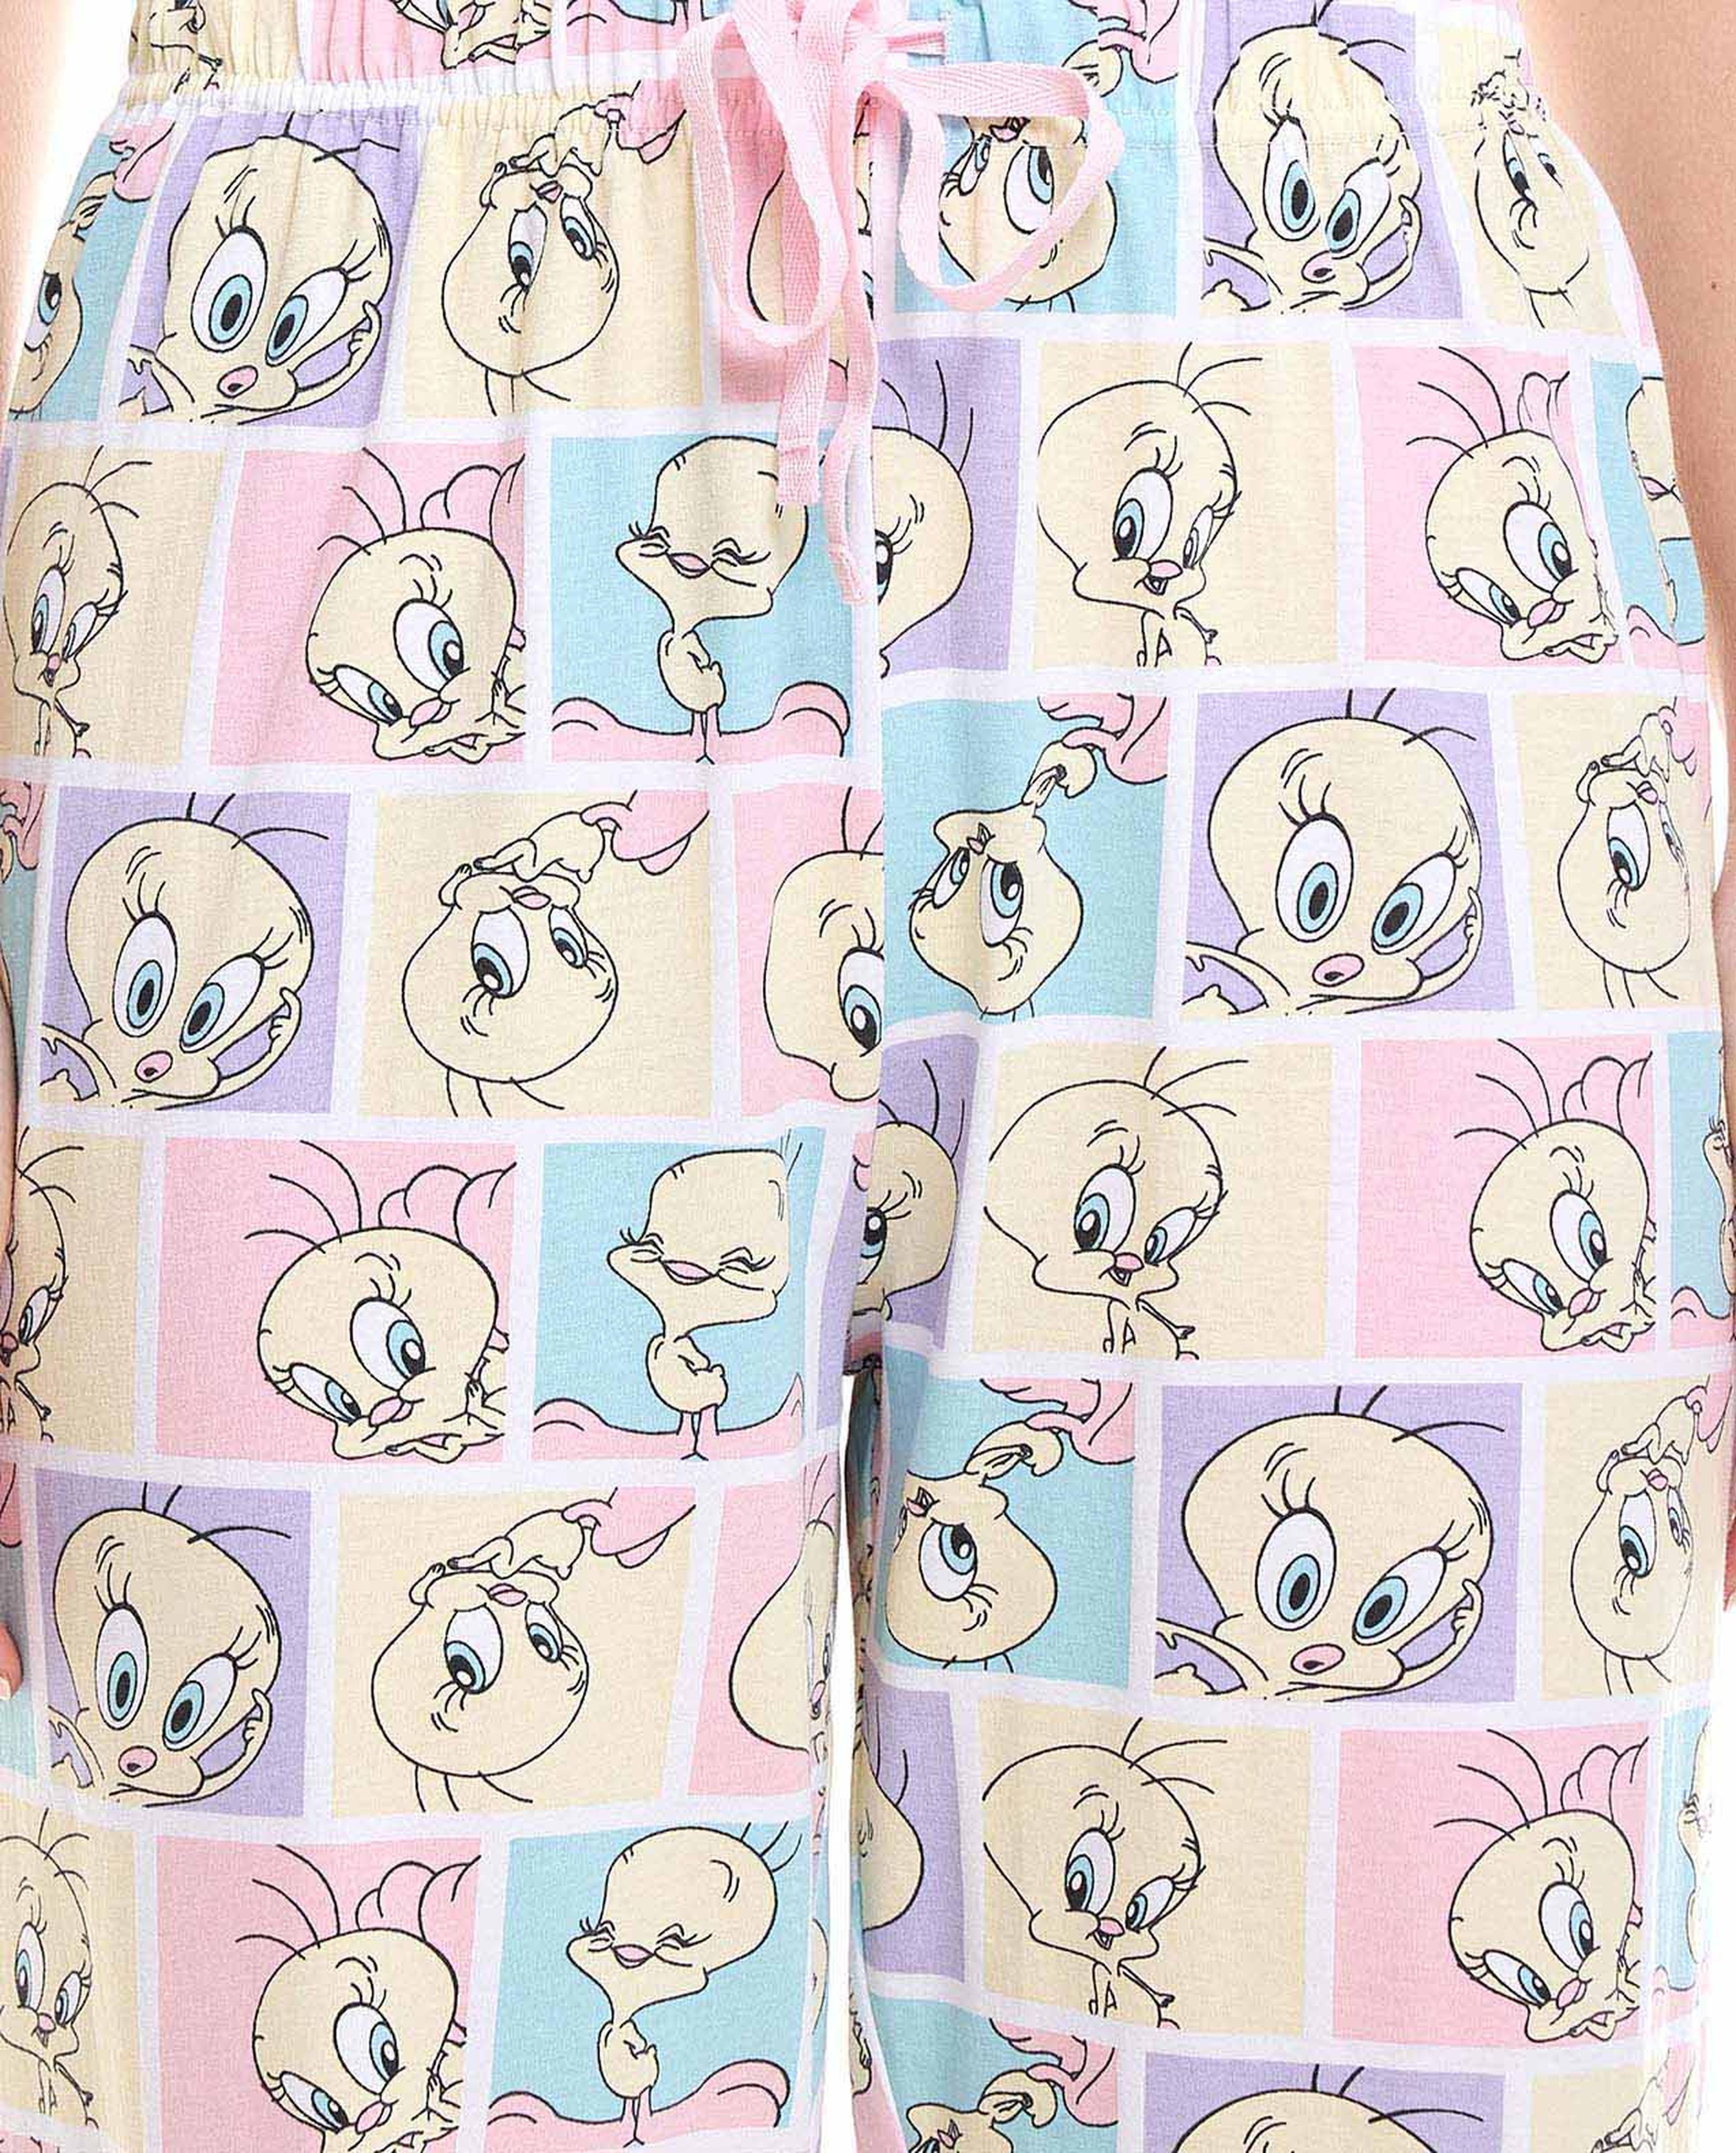 Tweety Printed Pyjama Set